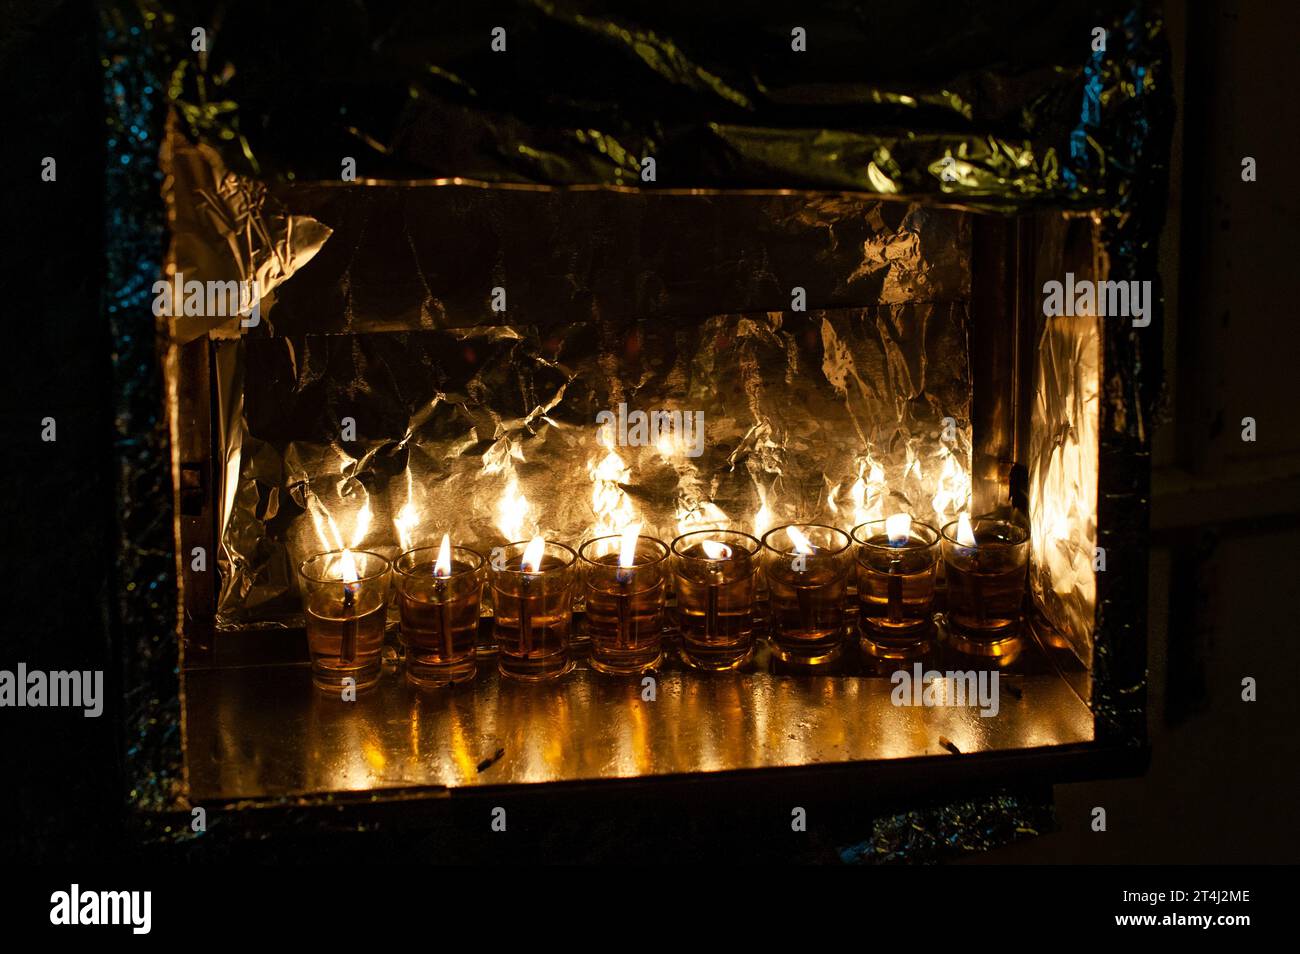 Le fiale di vetro contengono olio e stoppini brucianti in una menorah luminosa nell'ottava notte del festival ebraico di Hanukkah in Israele. Foto Stock